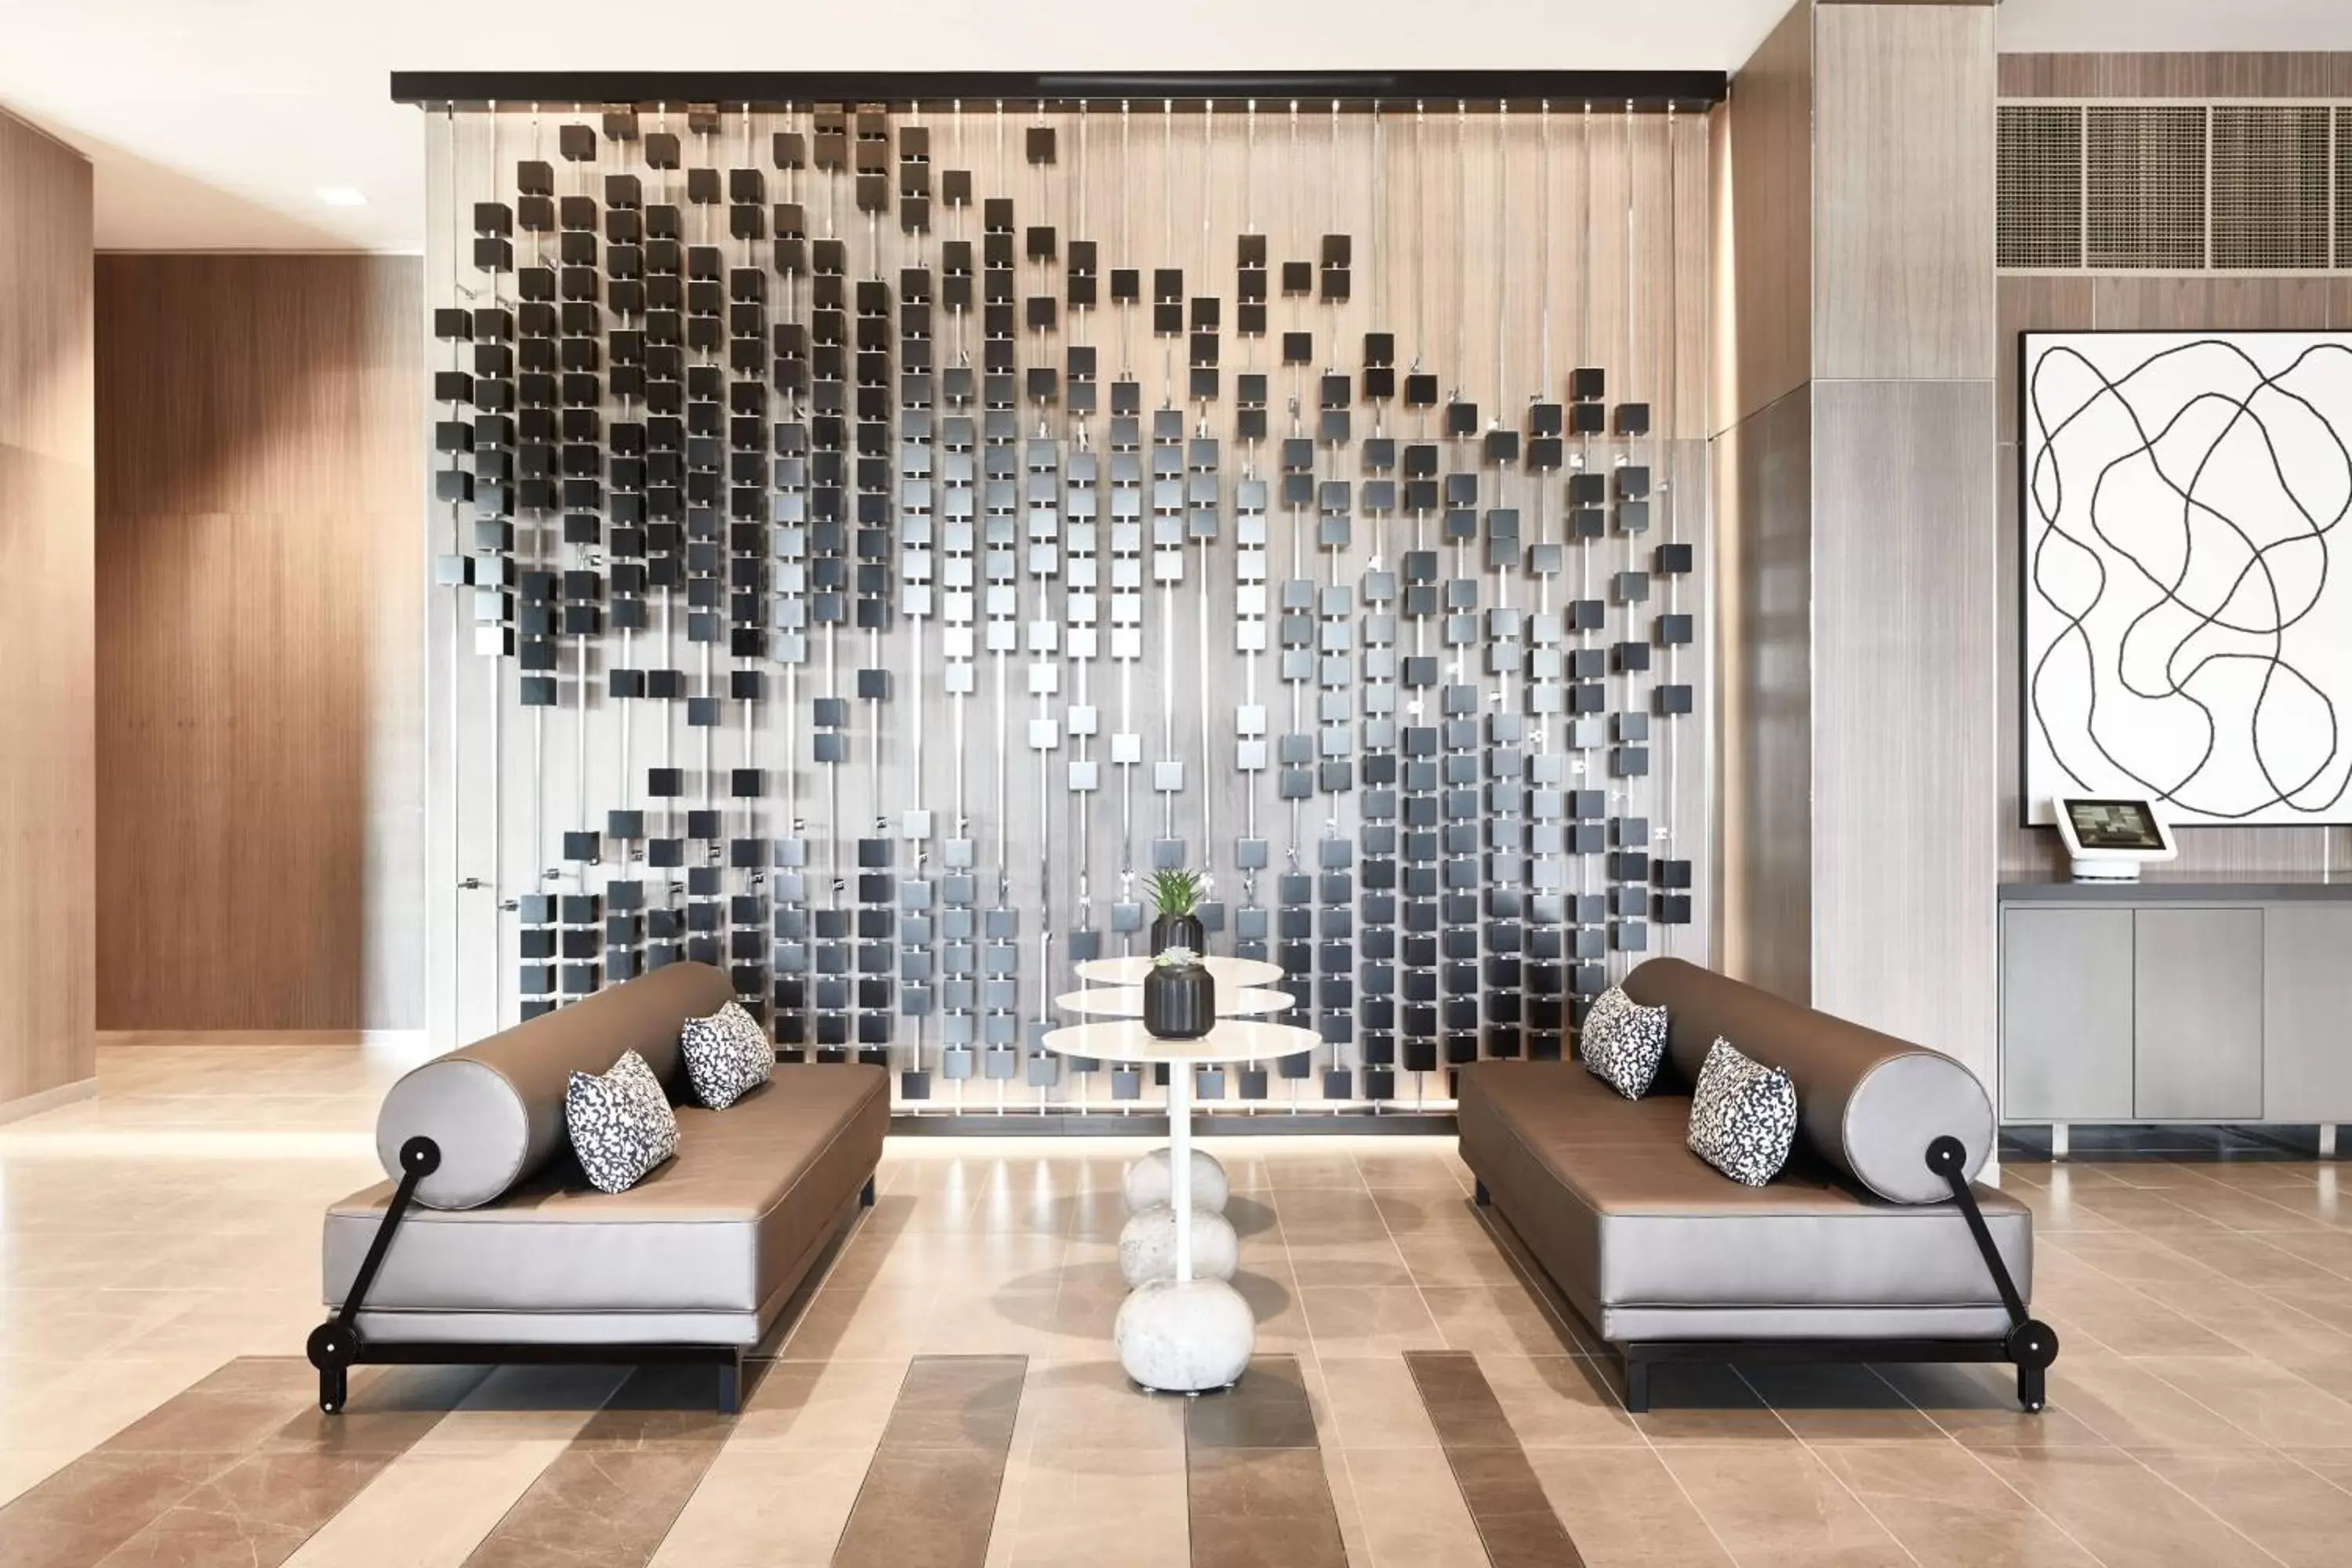 Lobby or reception in AC Hotel by Marriott Dallas Frisco